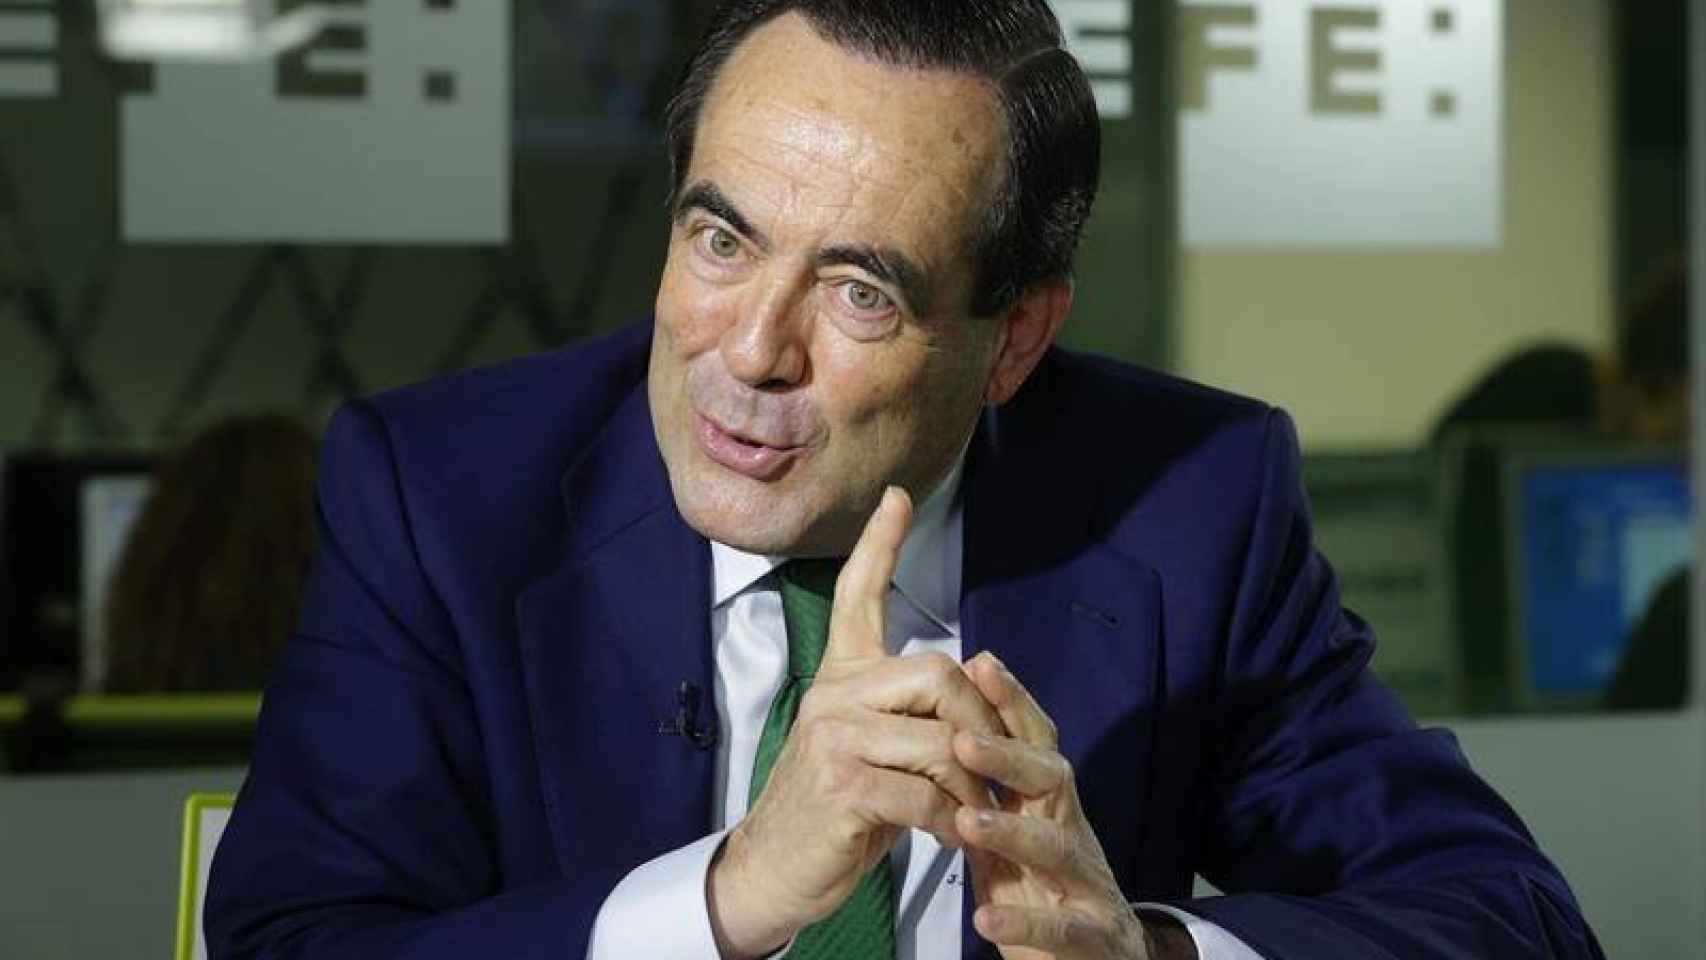 El ex ministro de Defensa y ex presidente del Congreso José Bono